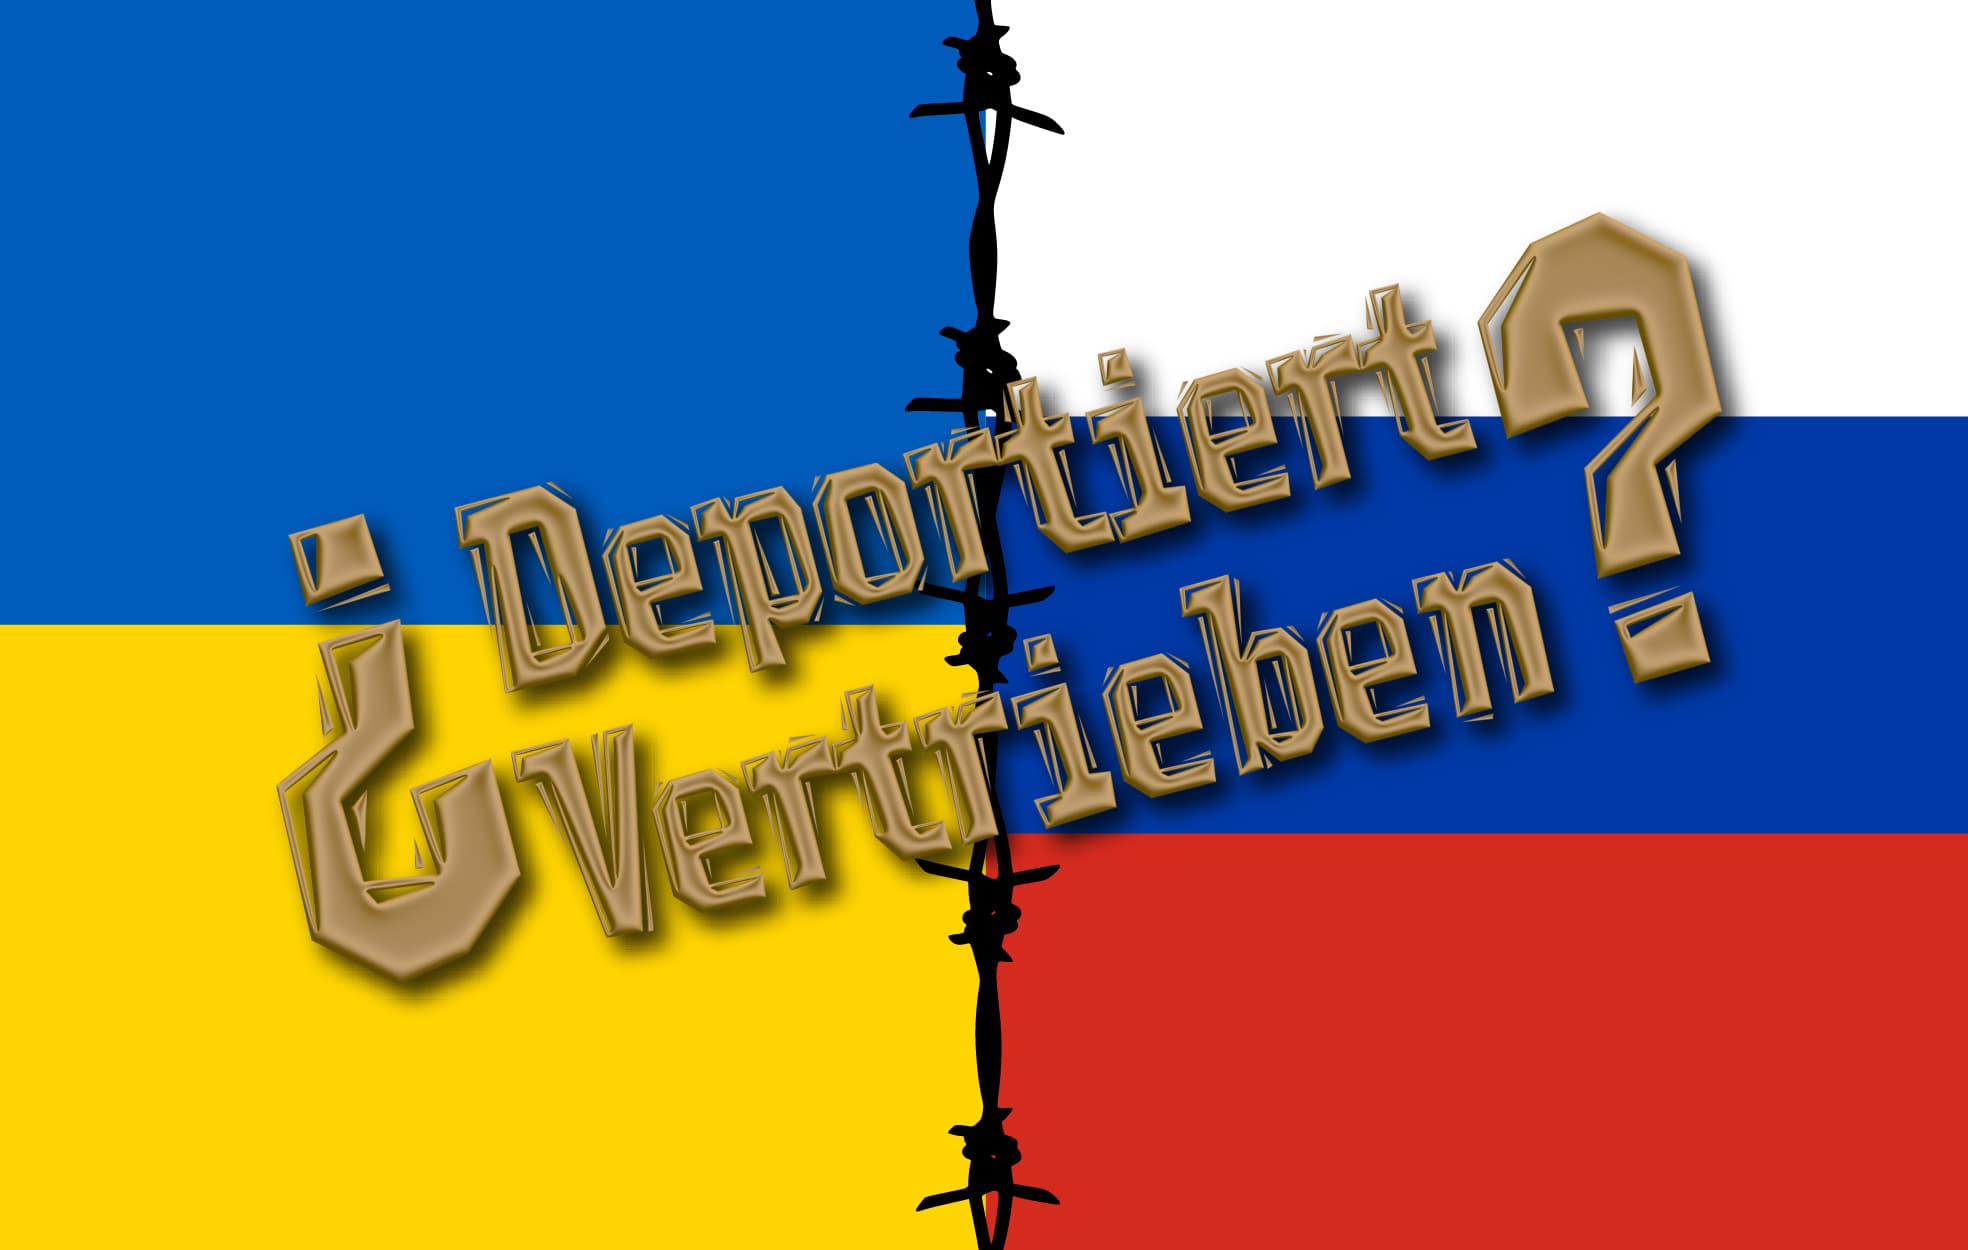 Deportiert vertreiben russland ukraine propaganda